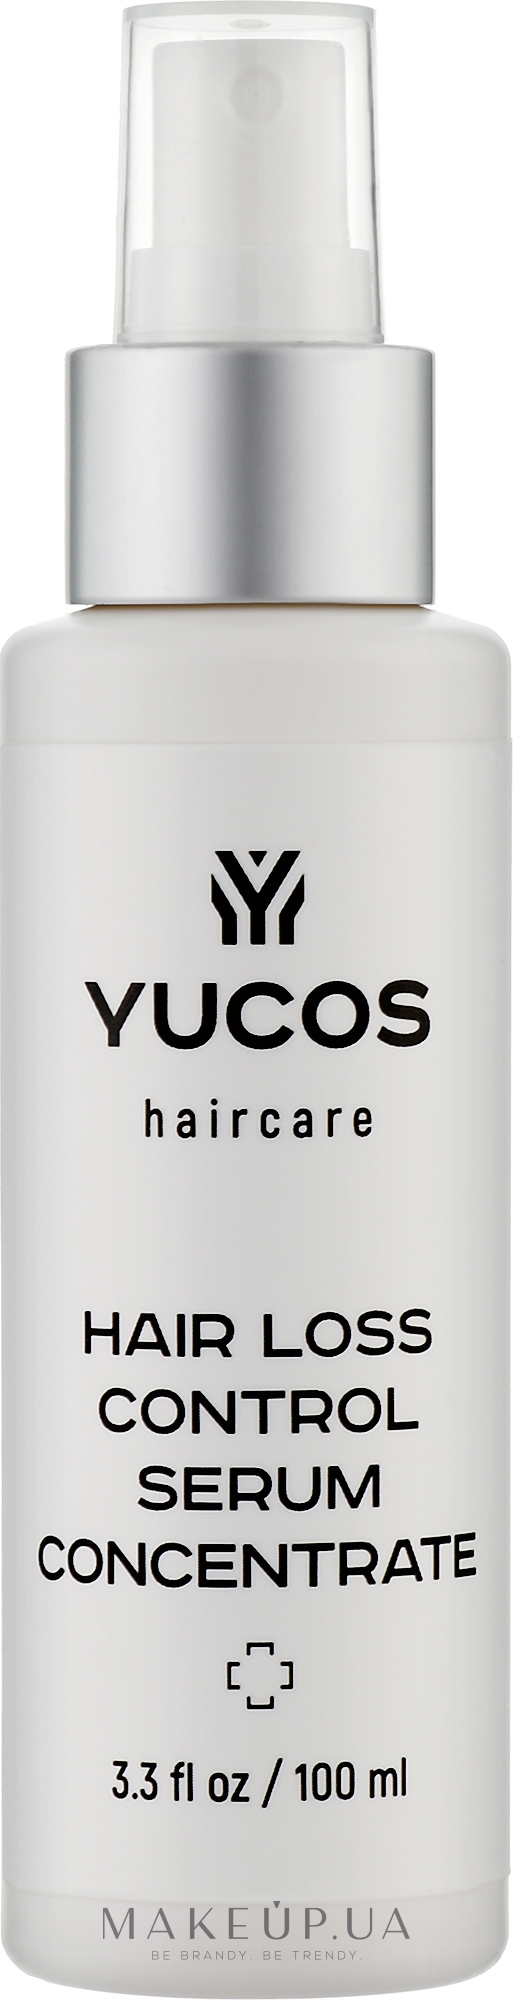 Концентрат сыворотки против выпадения волос - Yucos Hair Loss Control Serum Concentrate — фото 100ml